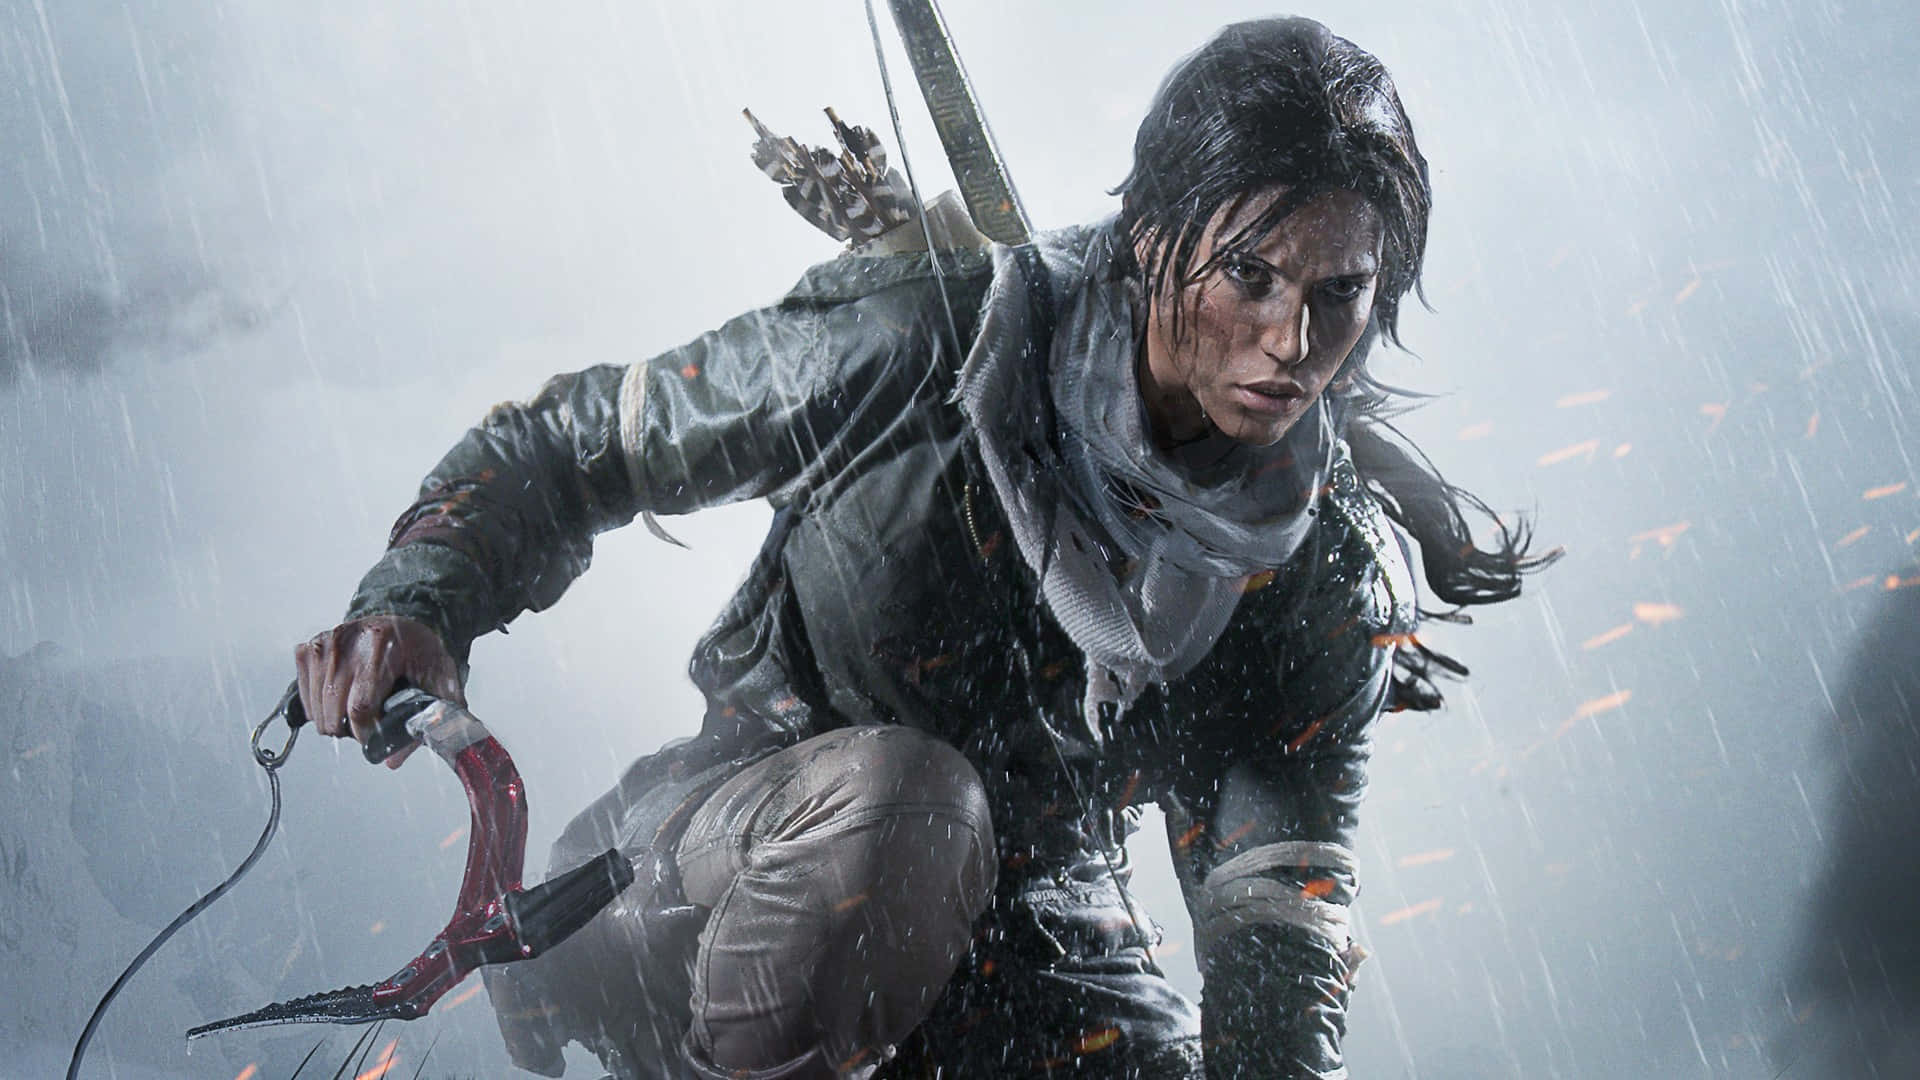 Laracroft Combatte Il Freddo Della Siberia In Rise Of The Tomb Raider